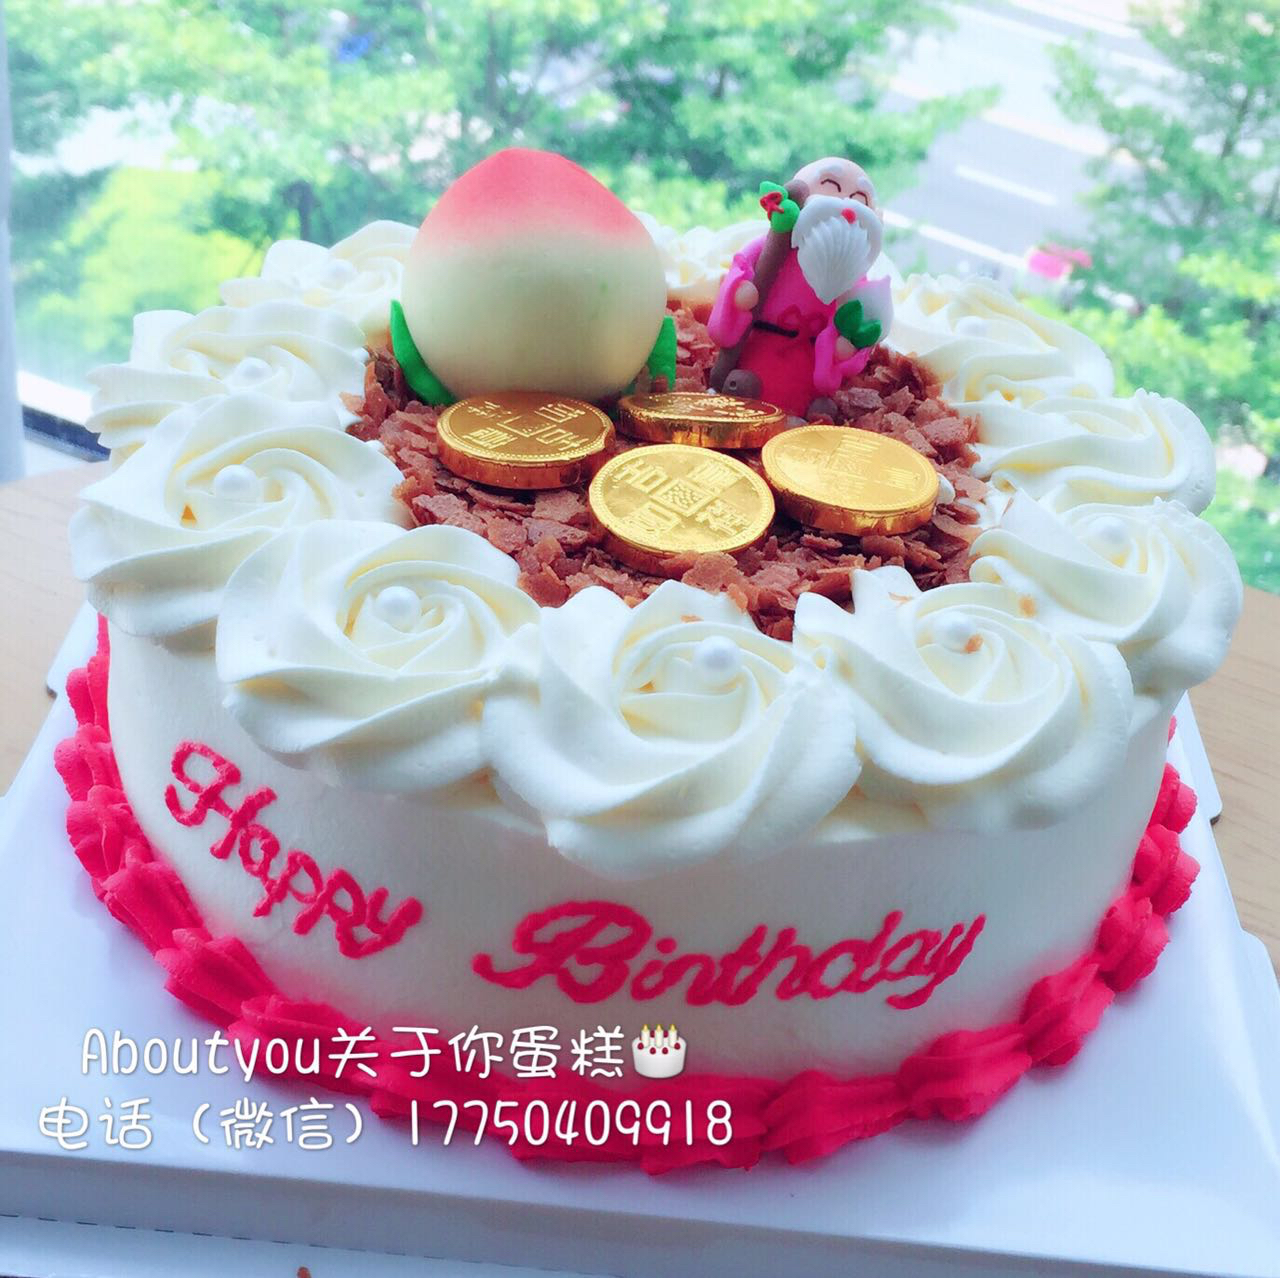 贺寿蛋糕创意寿桃寿星公寿星婆长辈生日蛋糕